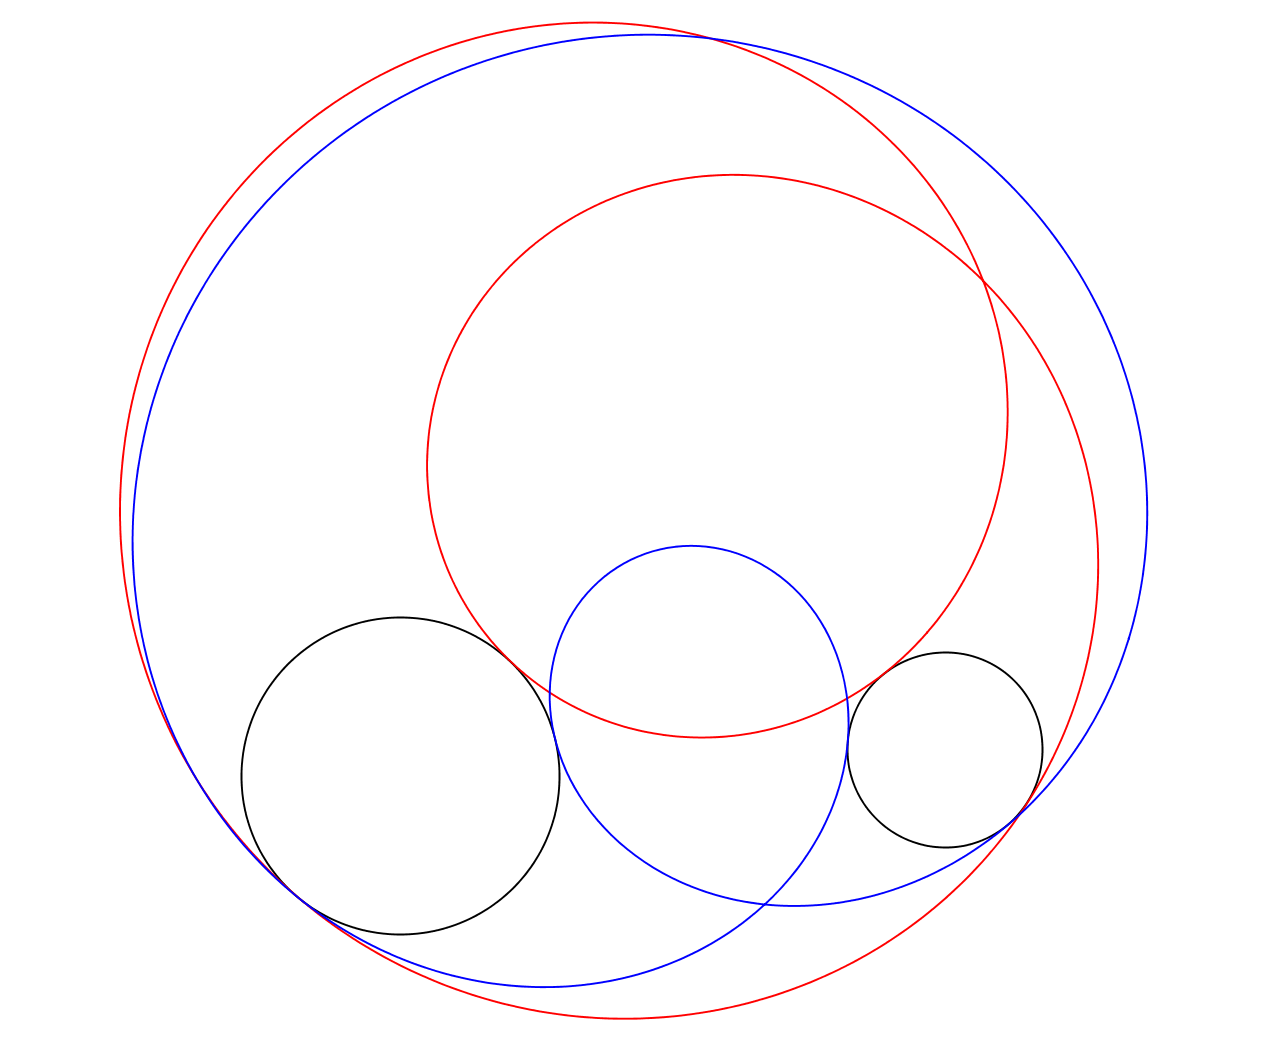 lugar geométrico ángulos a dos circunferencias.png